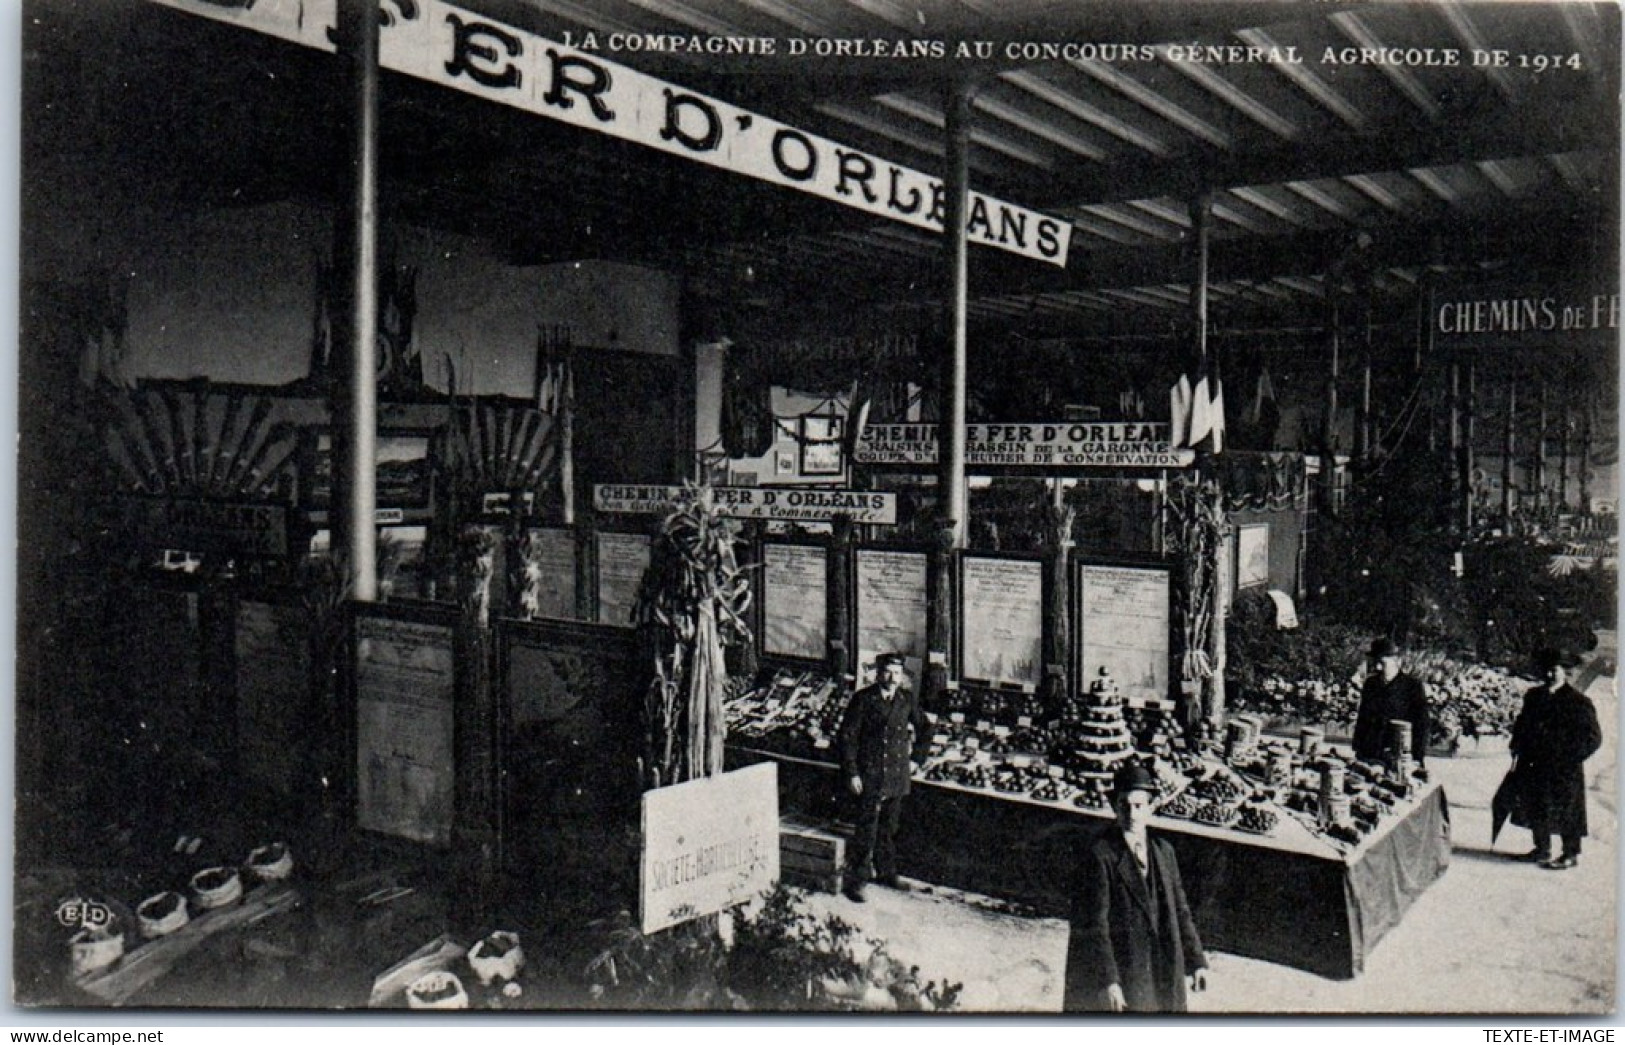 75 PARIS - Expo Agricole De 1914, Cie D'orleans Les Stands  - Exhibitions